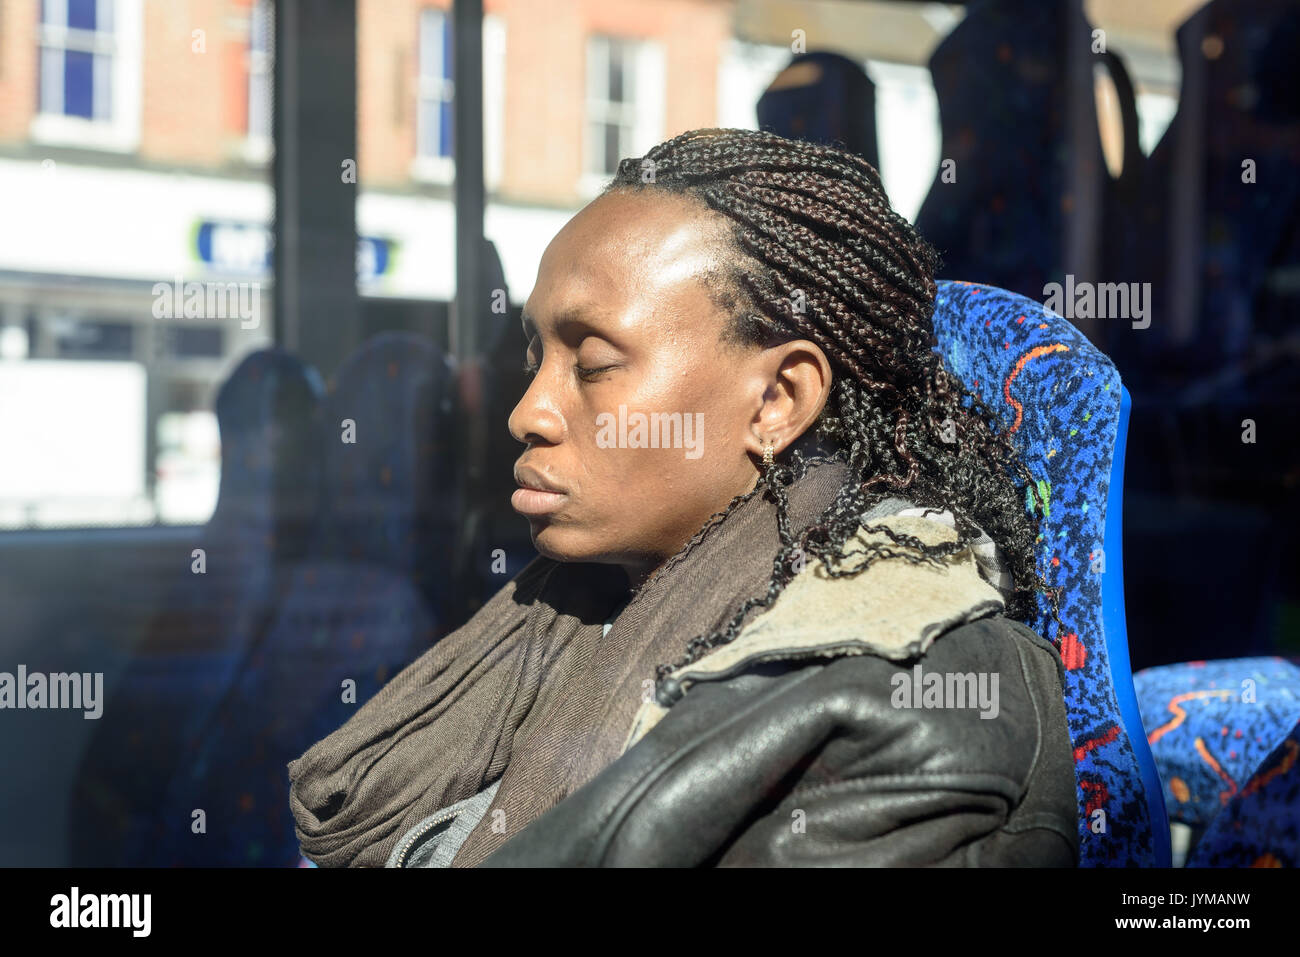 Sleepy femme noire avec des dreadlocks sèche assis sur un bus en plein soleil Banque D'Images